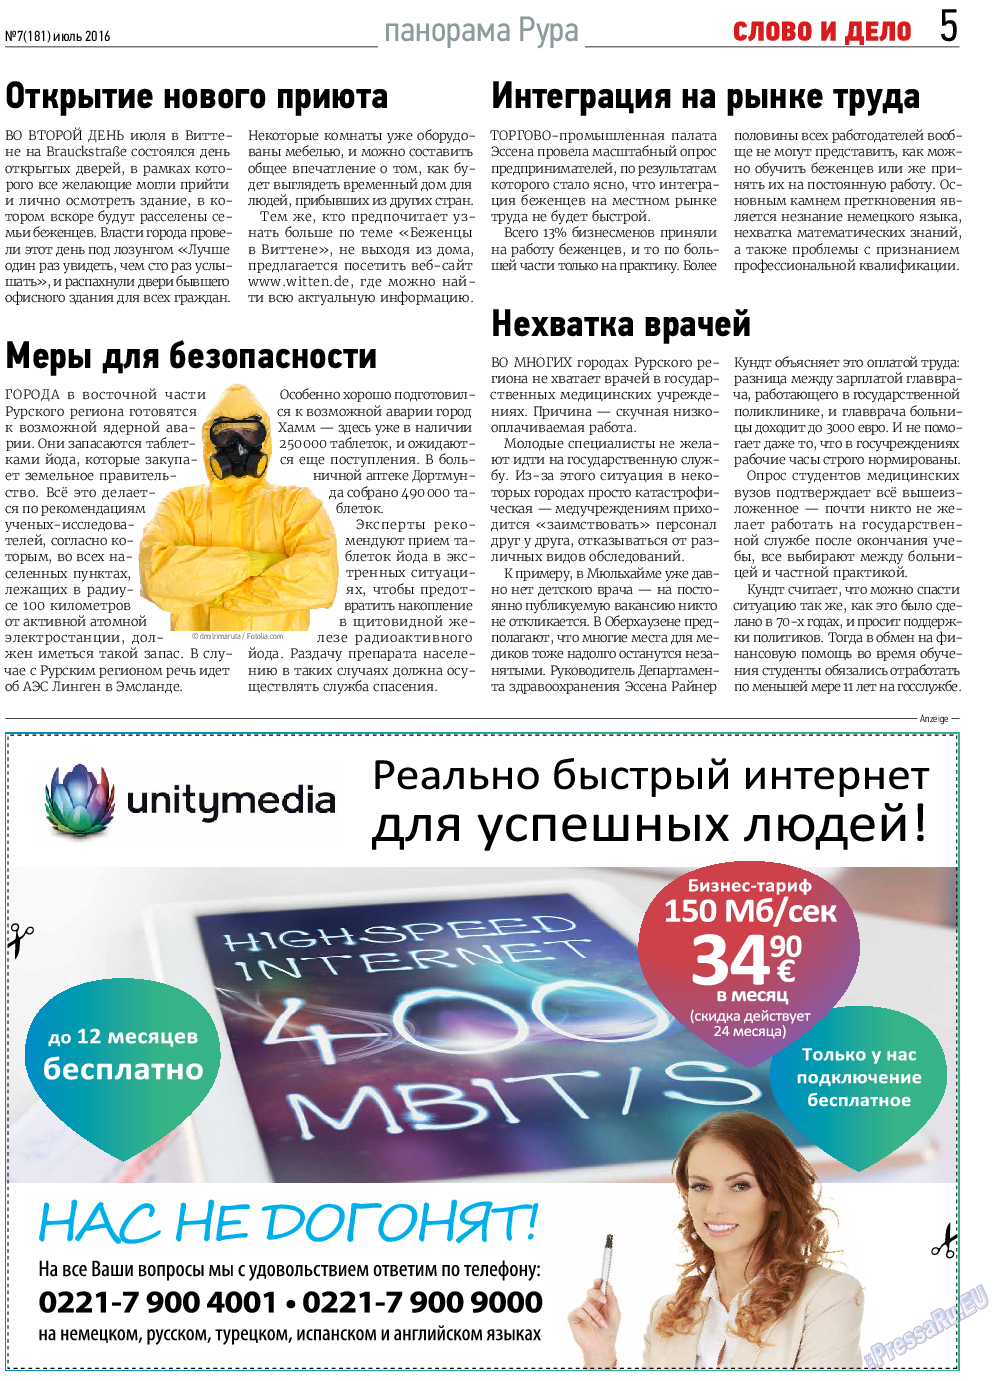 Слово и дело, газета. 2016 №7 стр.5